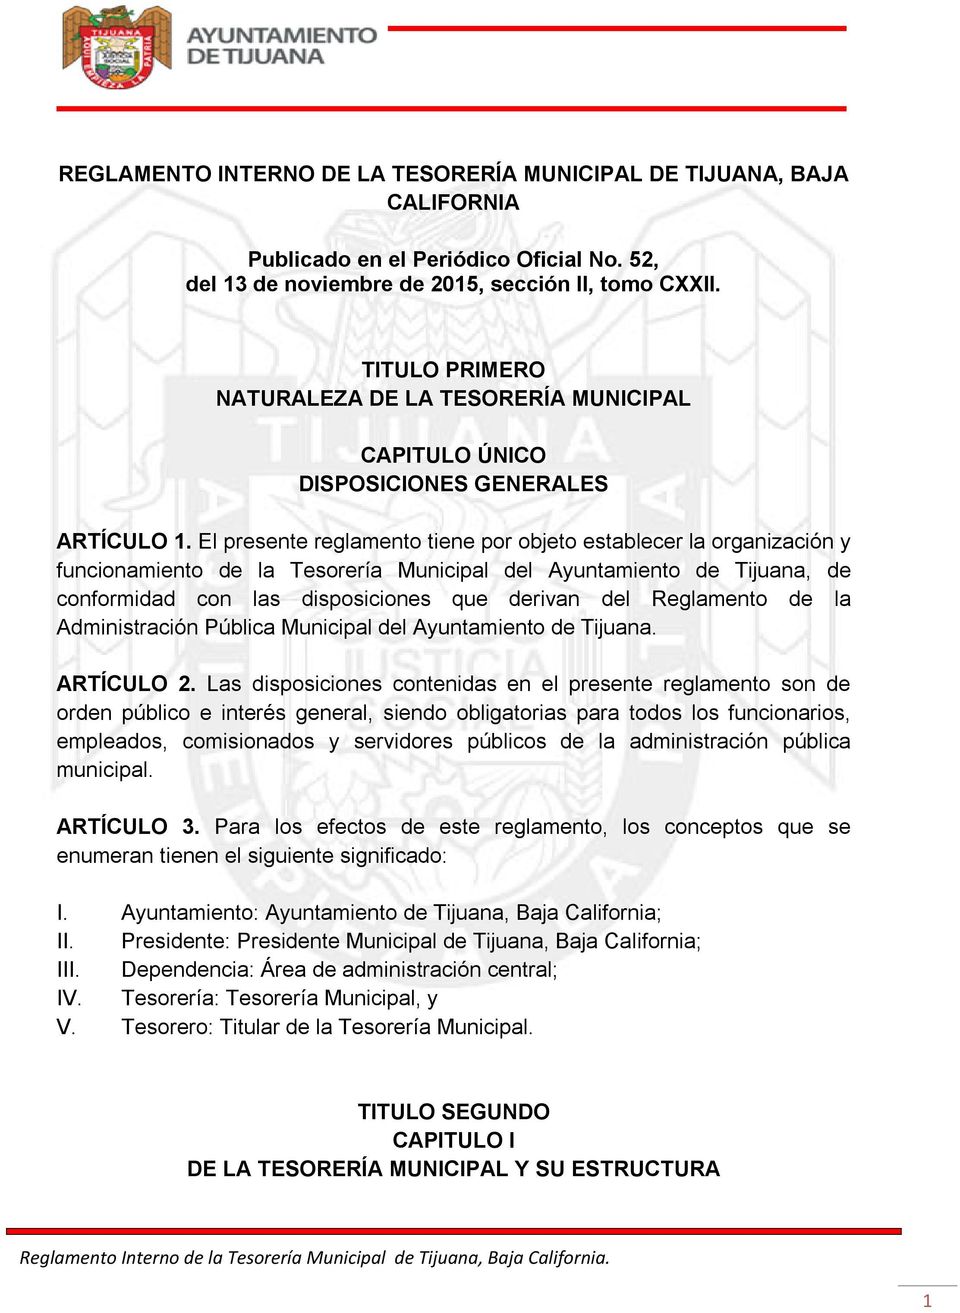 El presente reglamento tiene por objeto establecer la organización y funcionamiento de la Tesorería Municipal del Ayuntamiento de Tijuana, de conformidad con las disposiciones que derivan del